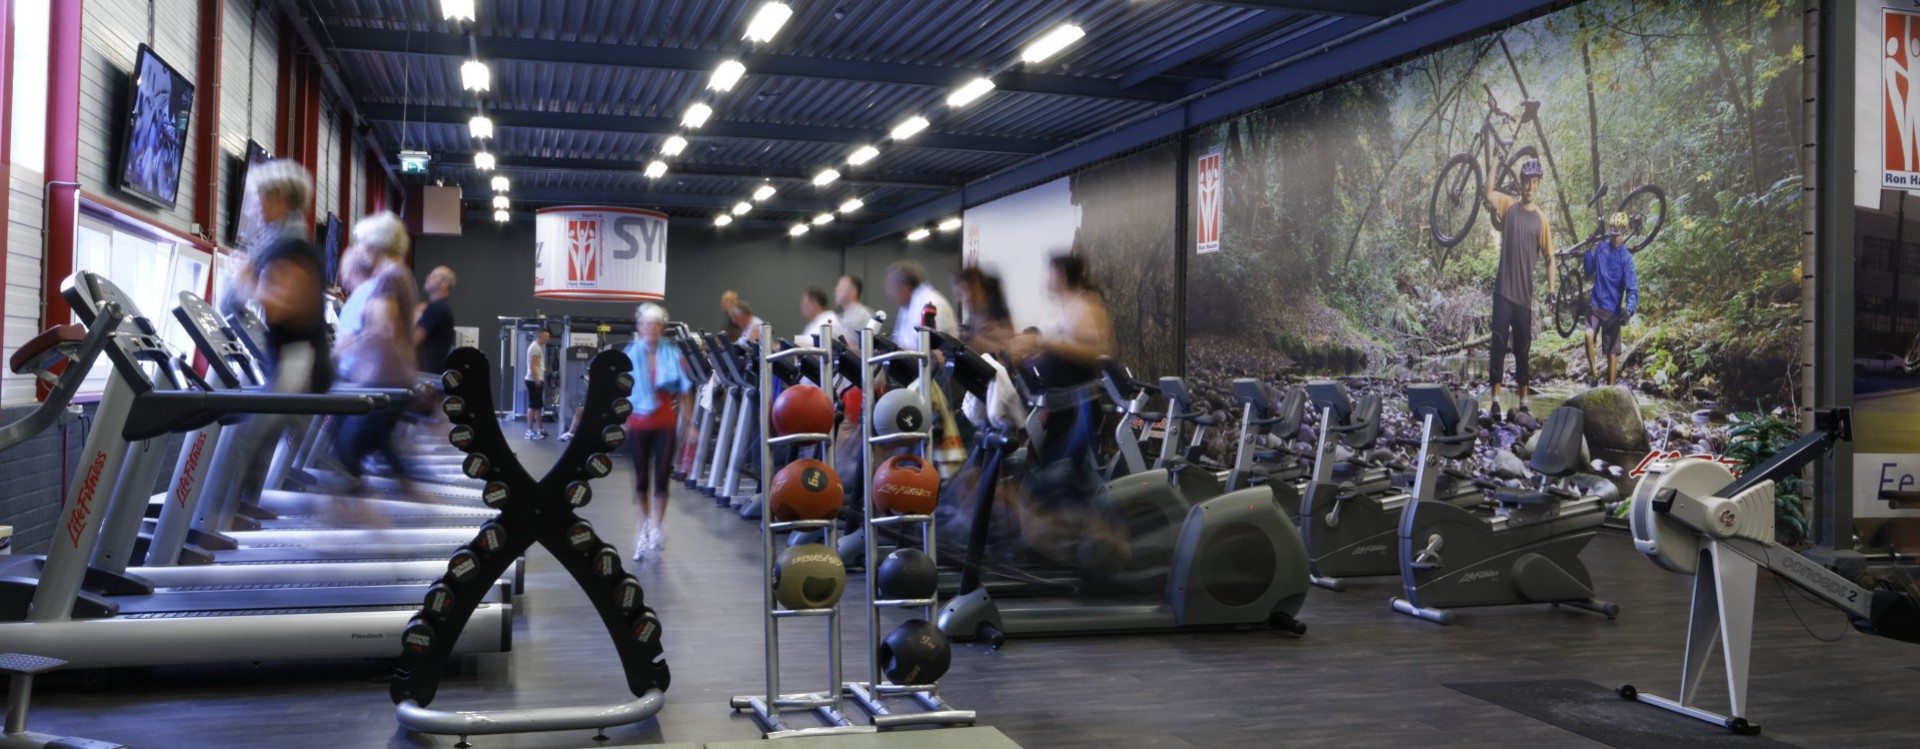 Fitness centrum Ron Haans Veendam